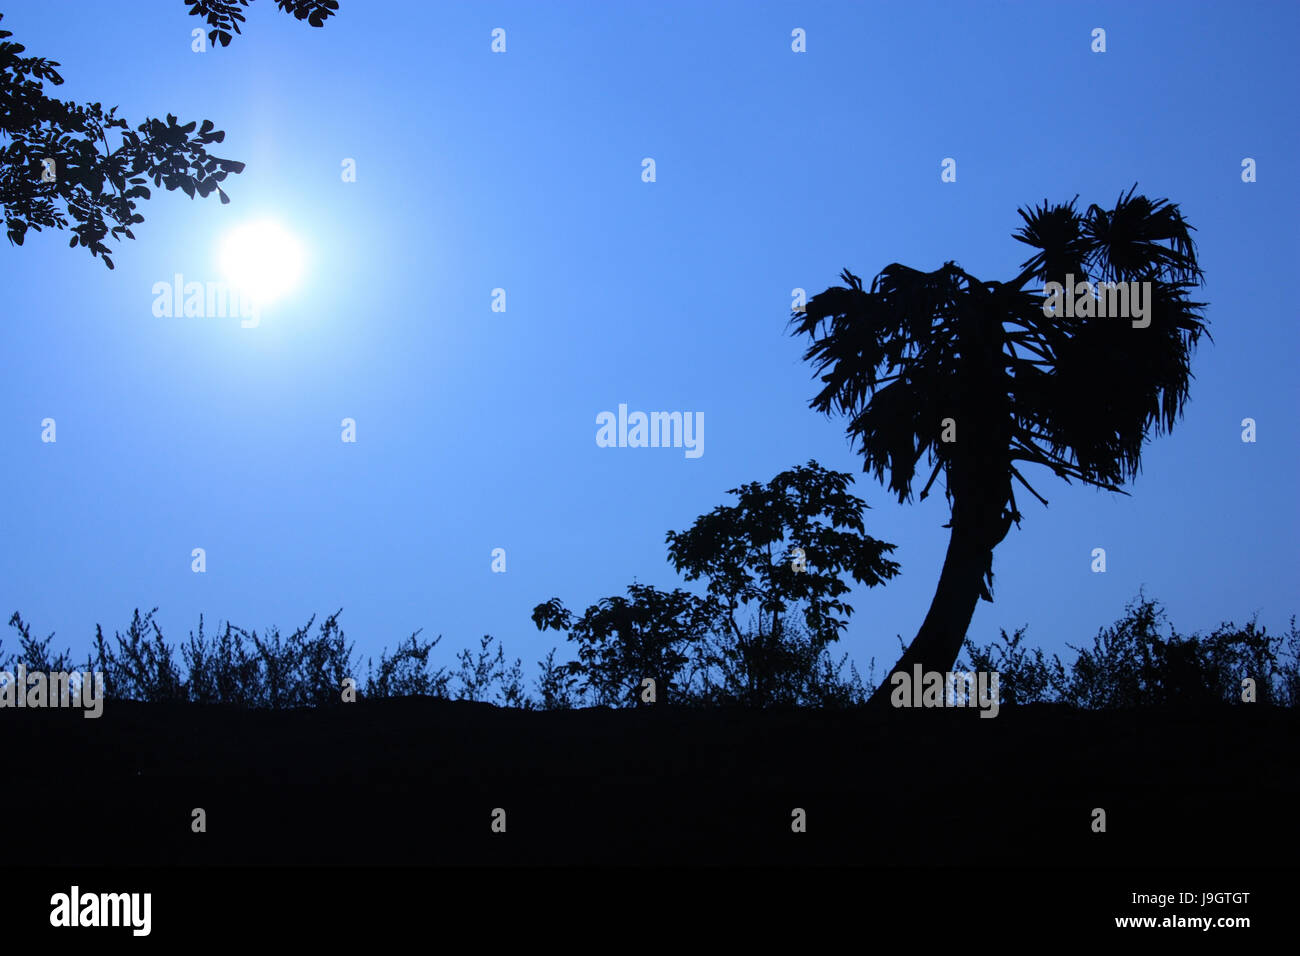 Eine Silhouette des Baumes mit Hintergrund der tiefblaue Himmel und Sonne Stockfoto